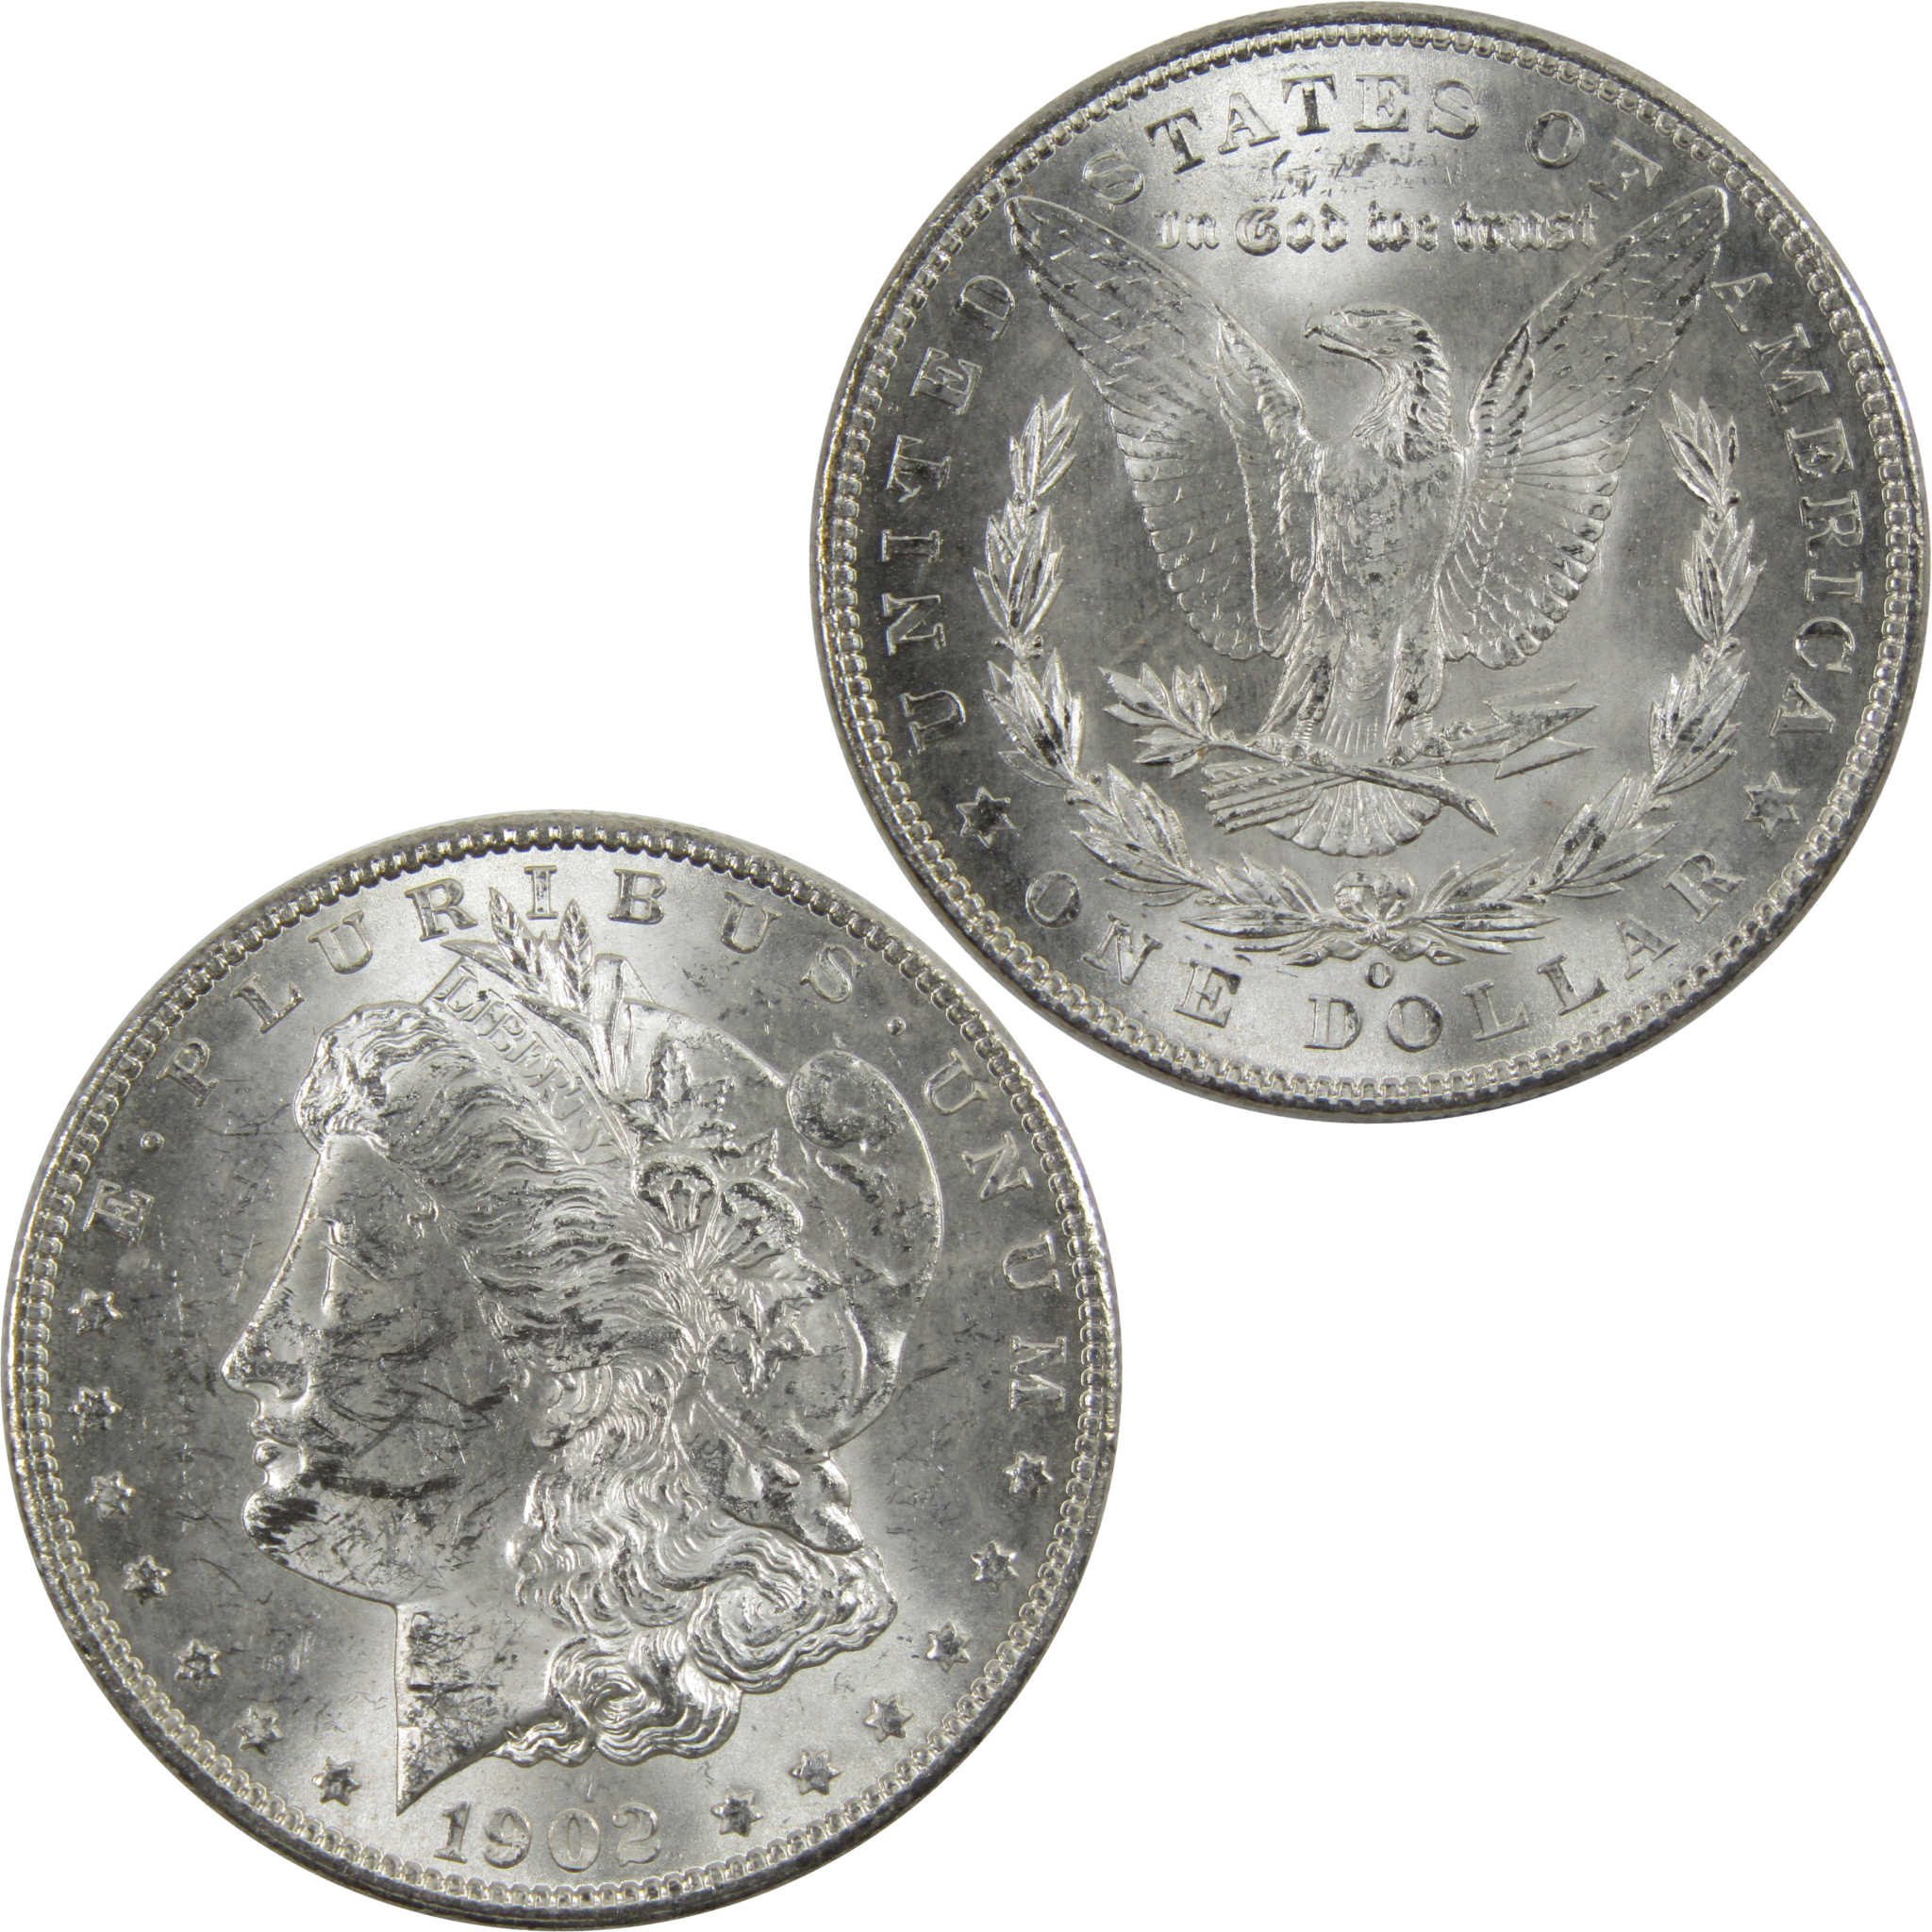 1902 O Morgan Dollar BU Uncirculated 90% Silver $1 Coin SKU:I6037 - Morgan coin - Morgan silver dollar - Morgan silver dollar for sale - Profile Coins &amp; Collectibles